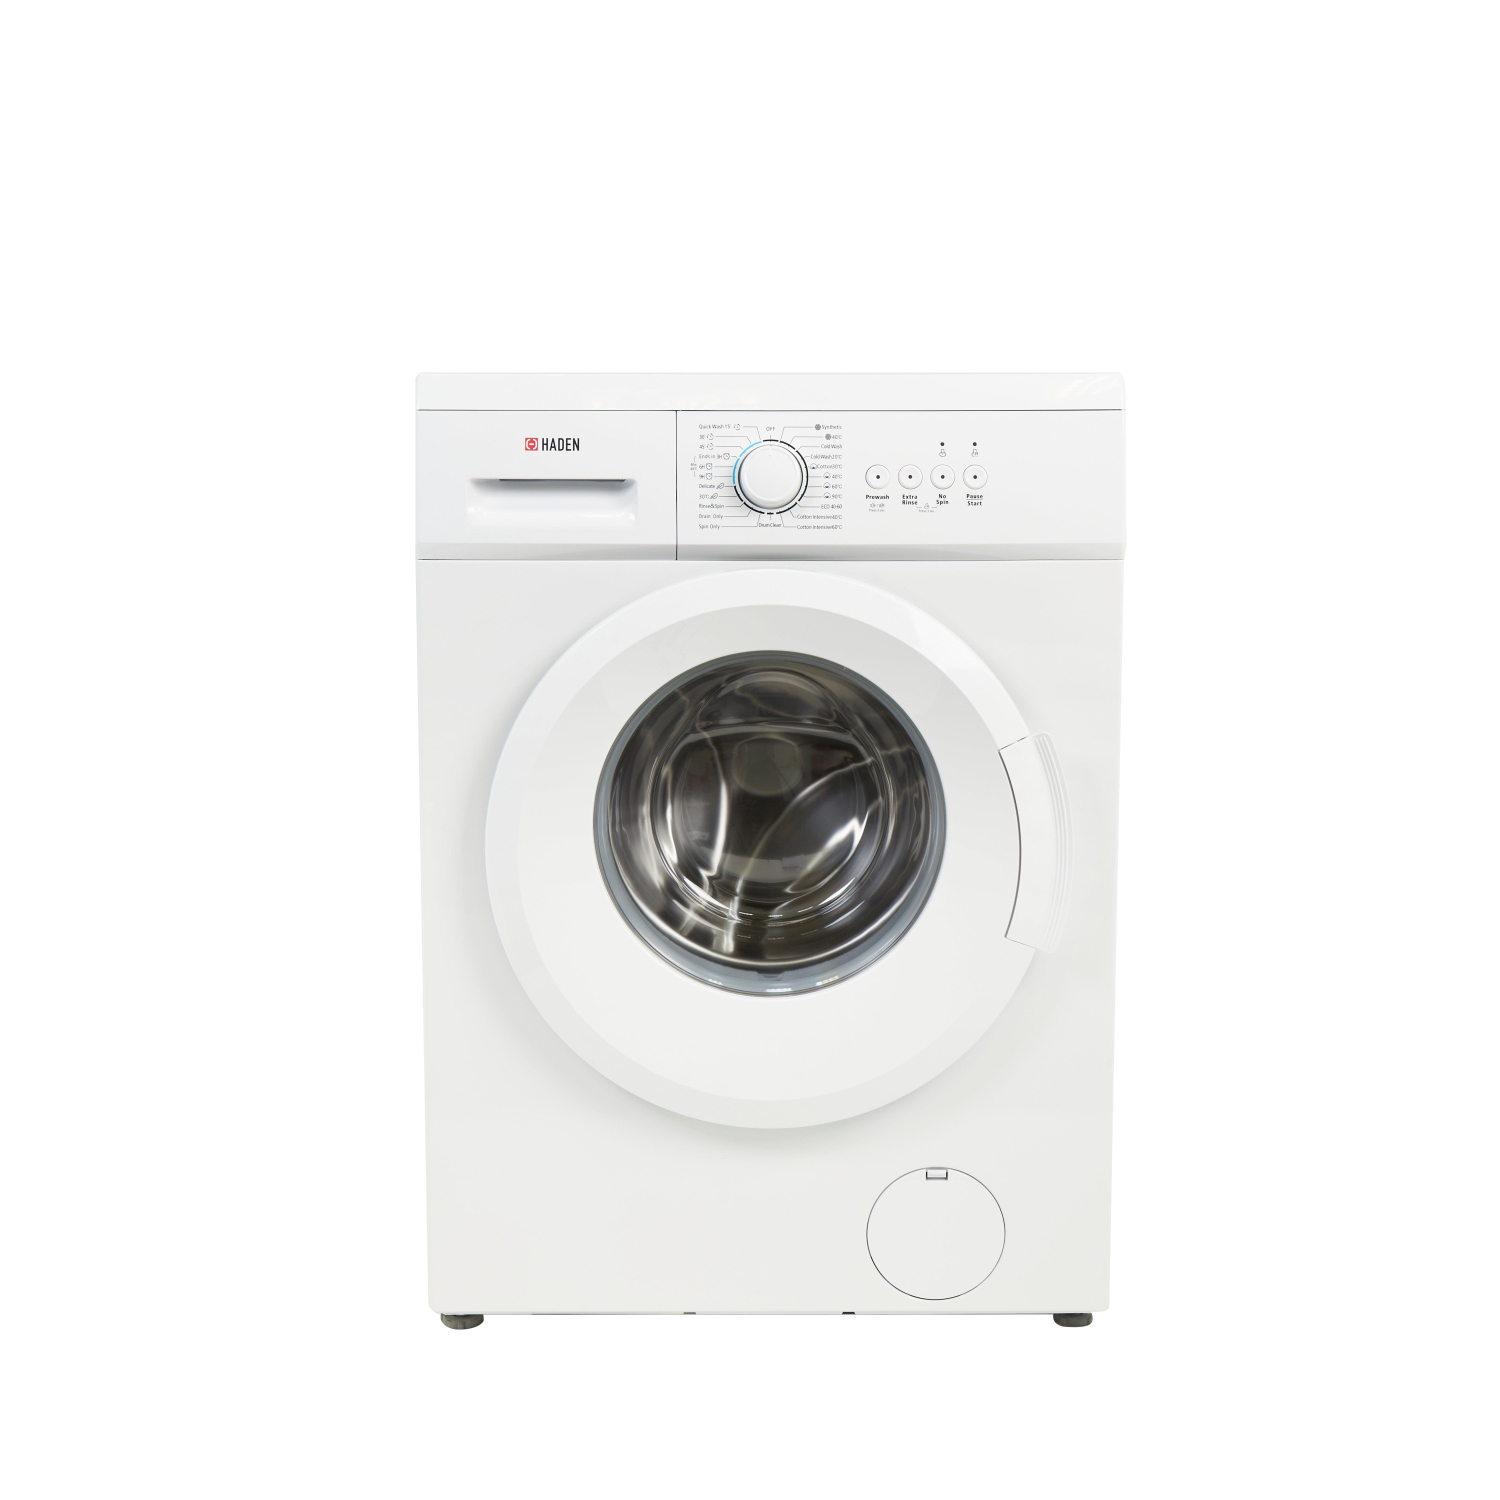 Haden HW1216 6kg 1200 Spin Washing Machine - White - 2